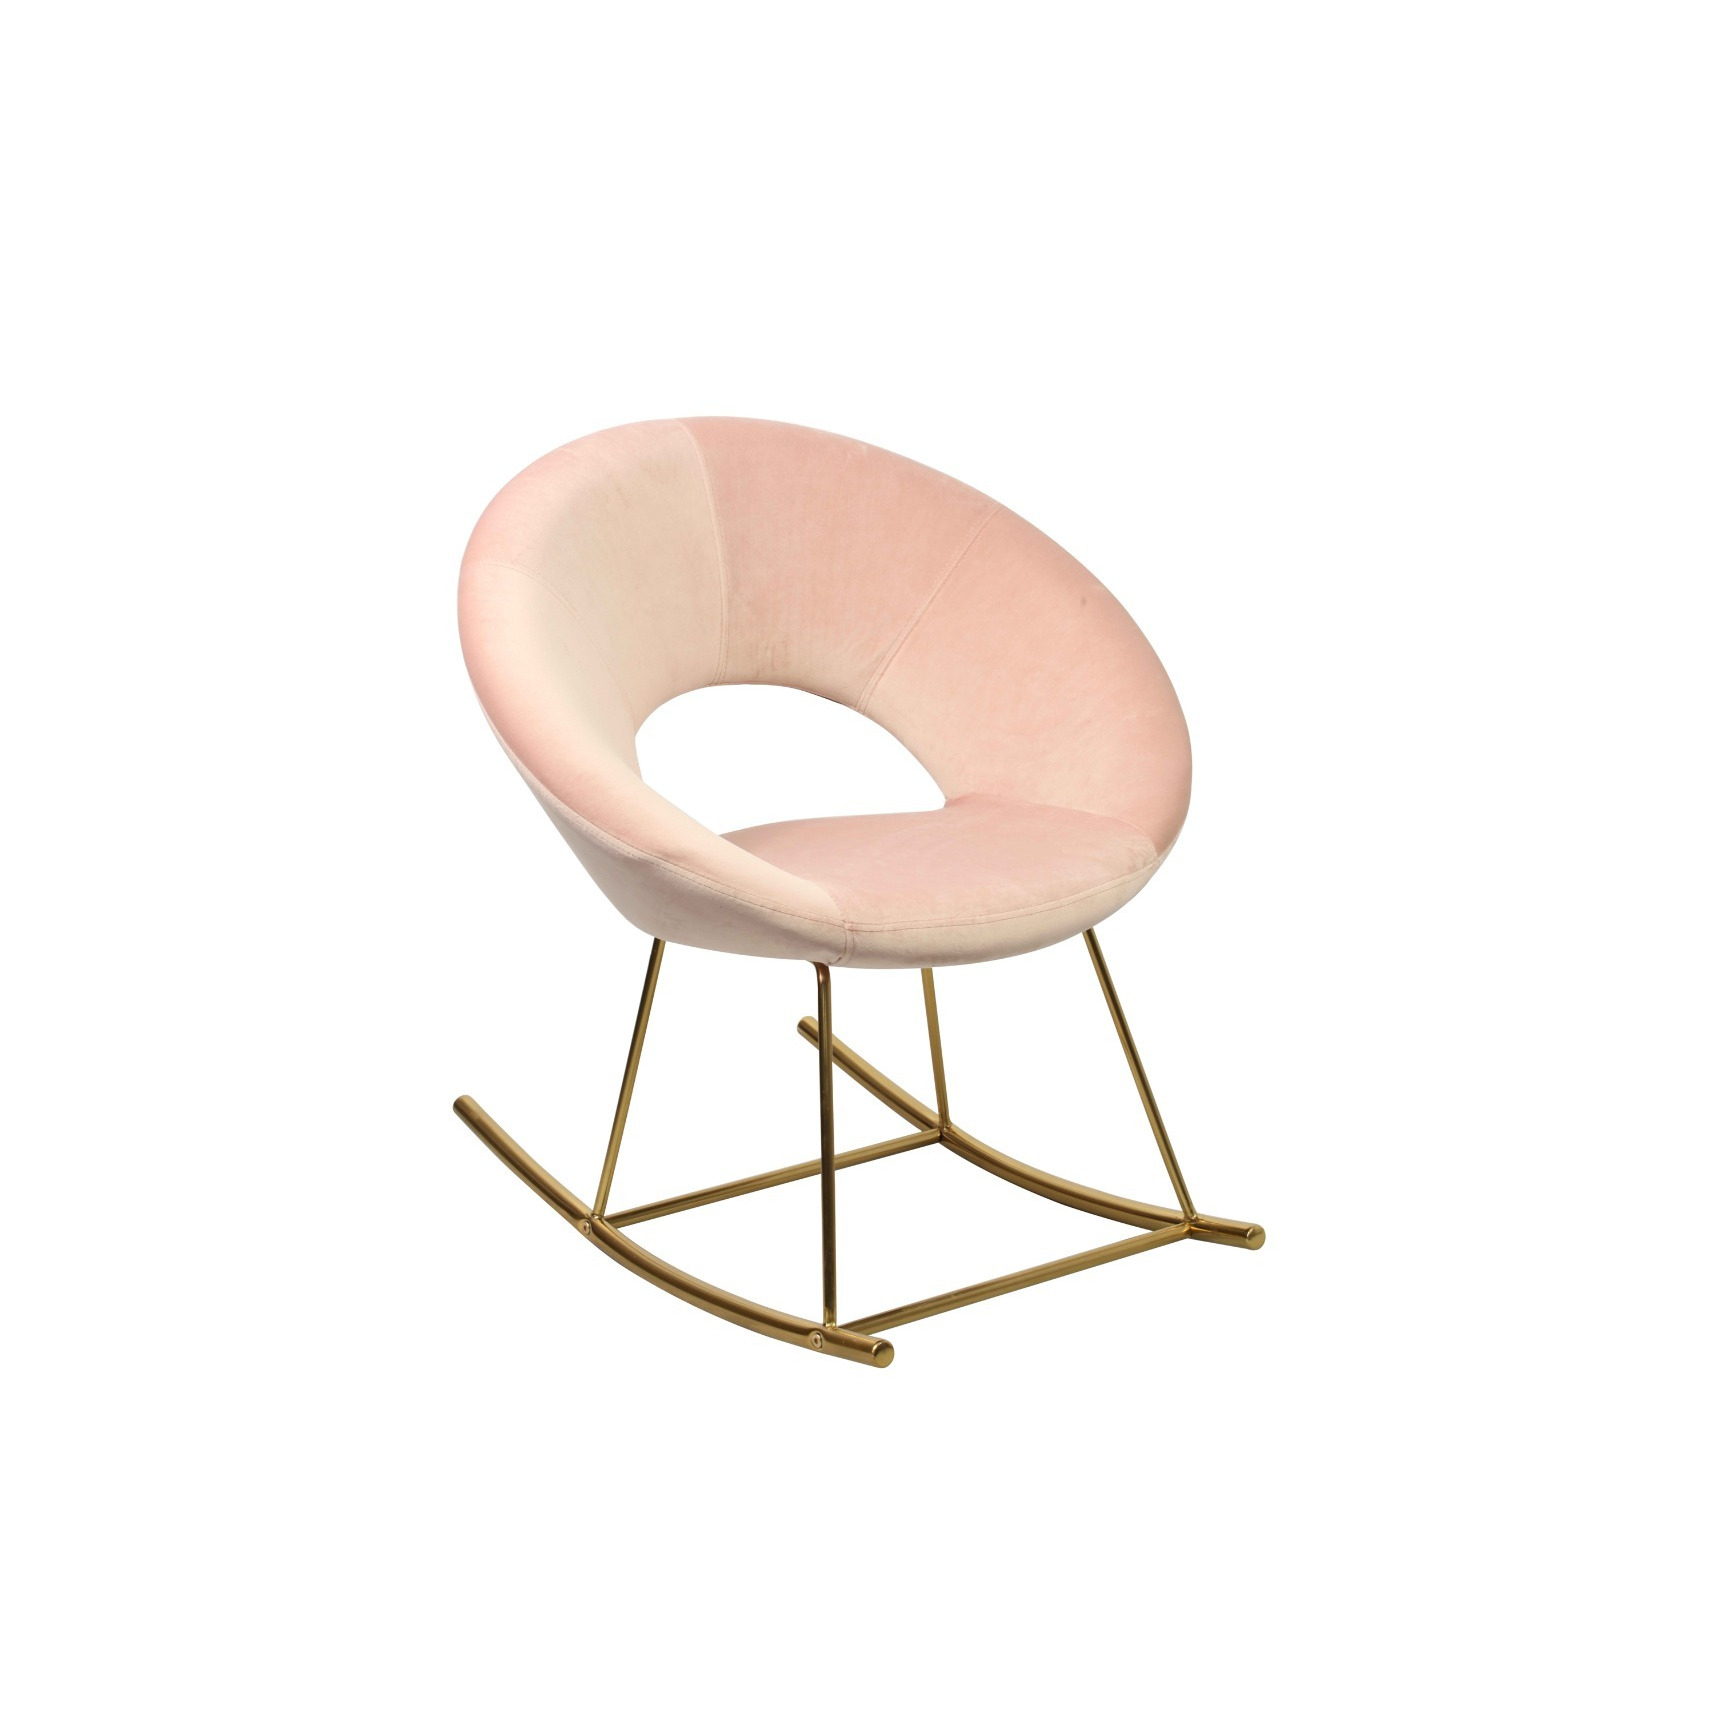 LPD Stella Pink Rocking Chair - image 1